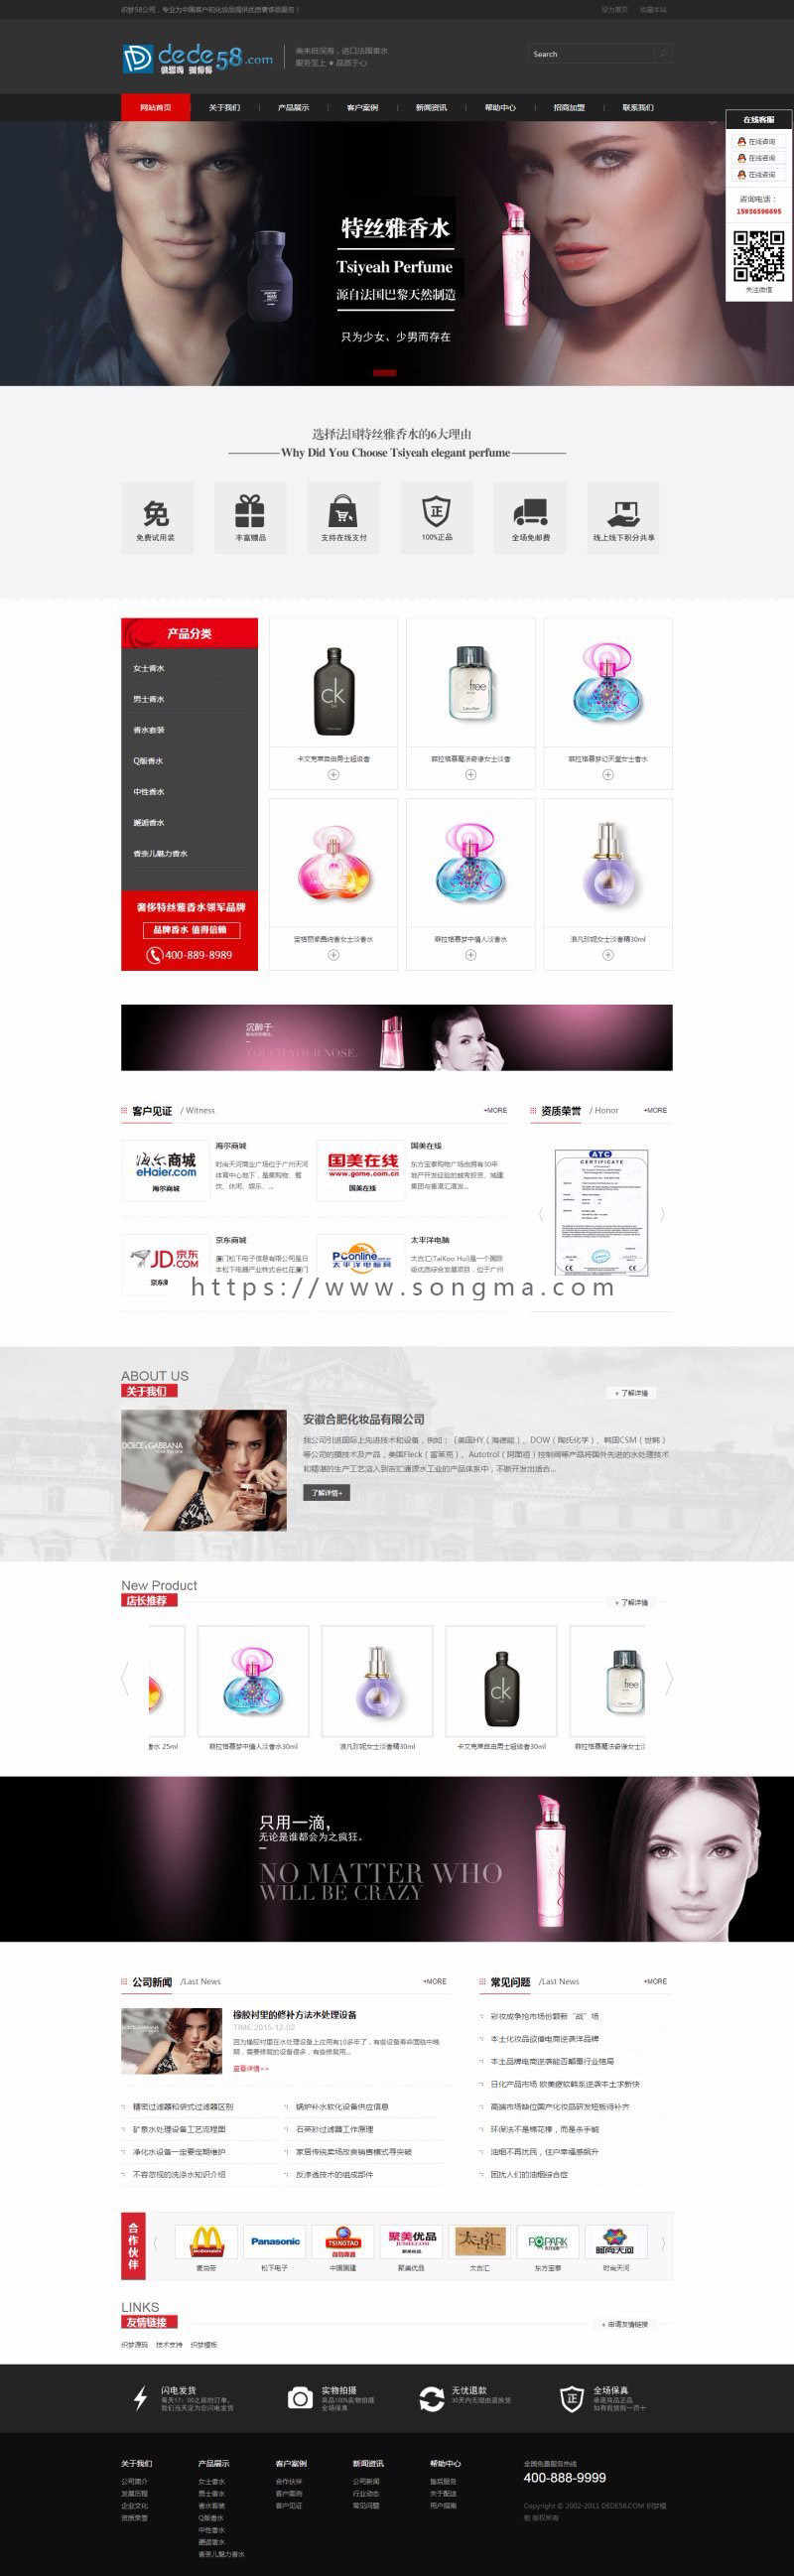 黑色化妆品类企业网站织梦模板